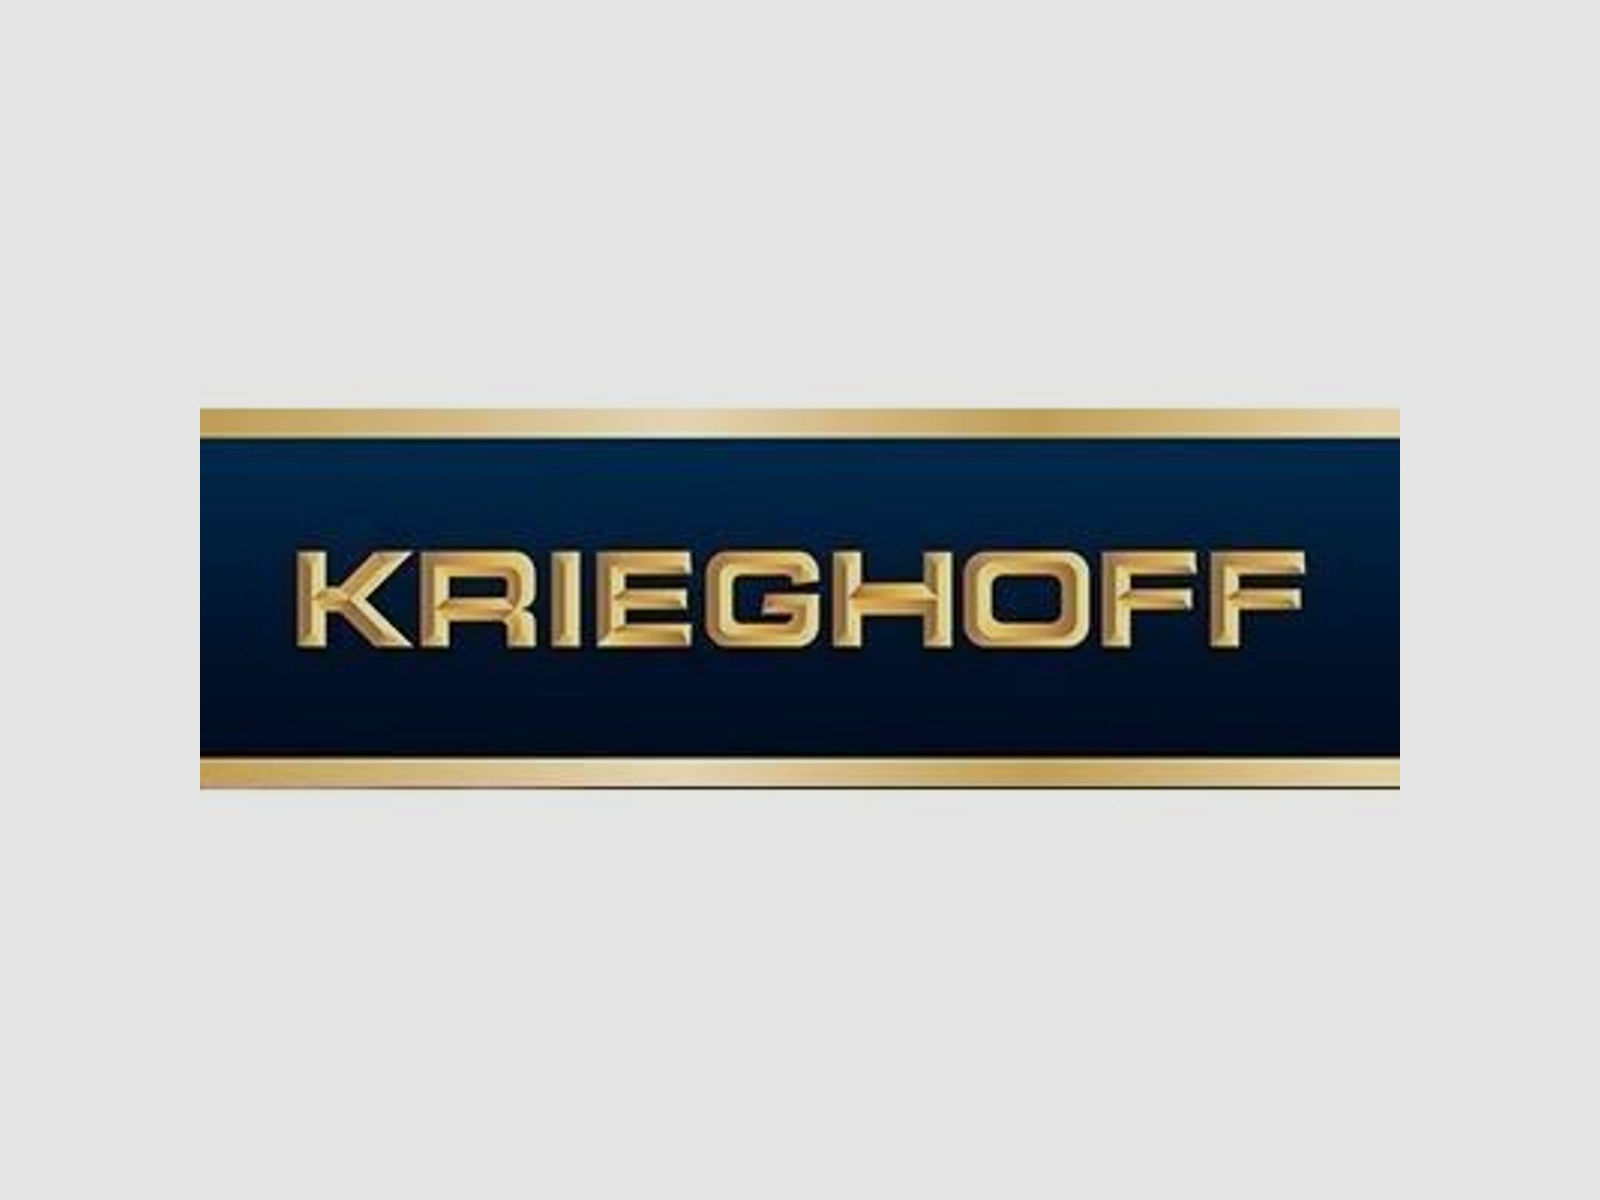 KRIEGHOFF Mehrpreis für Neuwaffe Schaftholz #3 - Mehrpreis Optima-Ultra-Classic-Hubertus